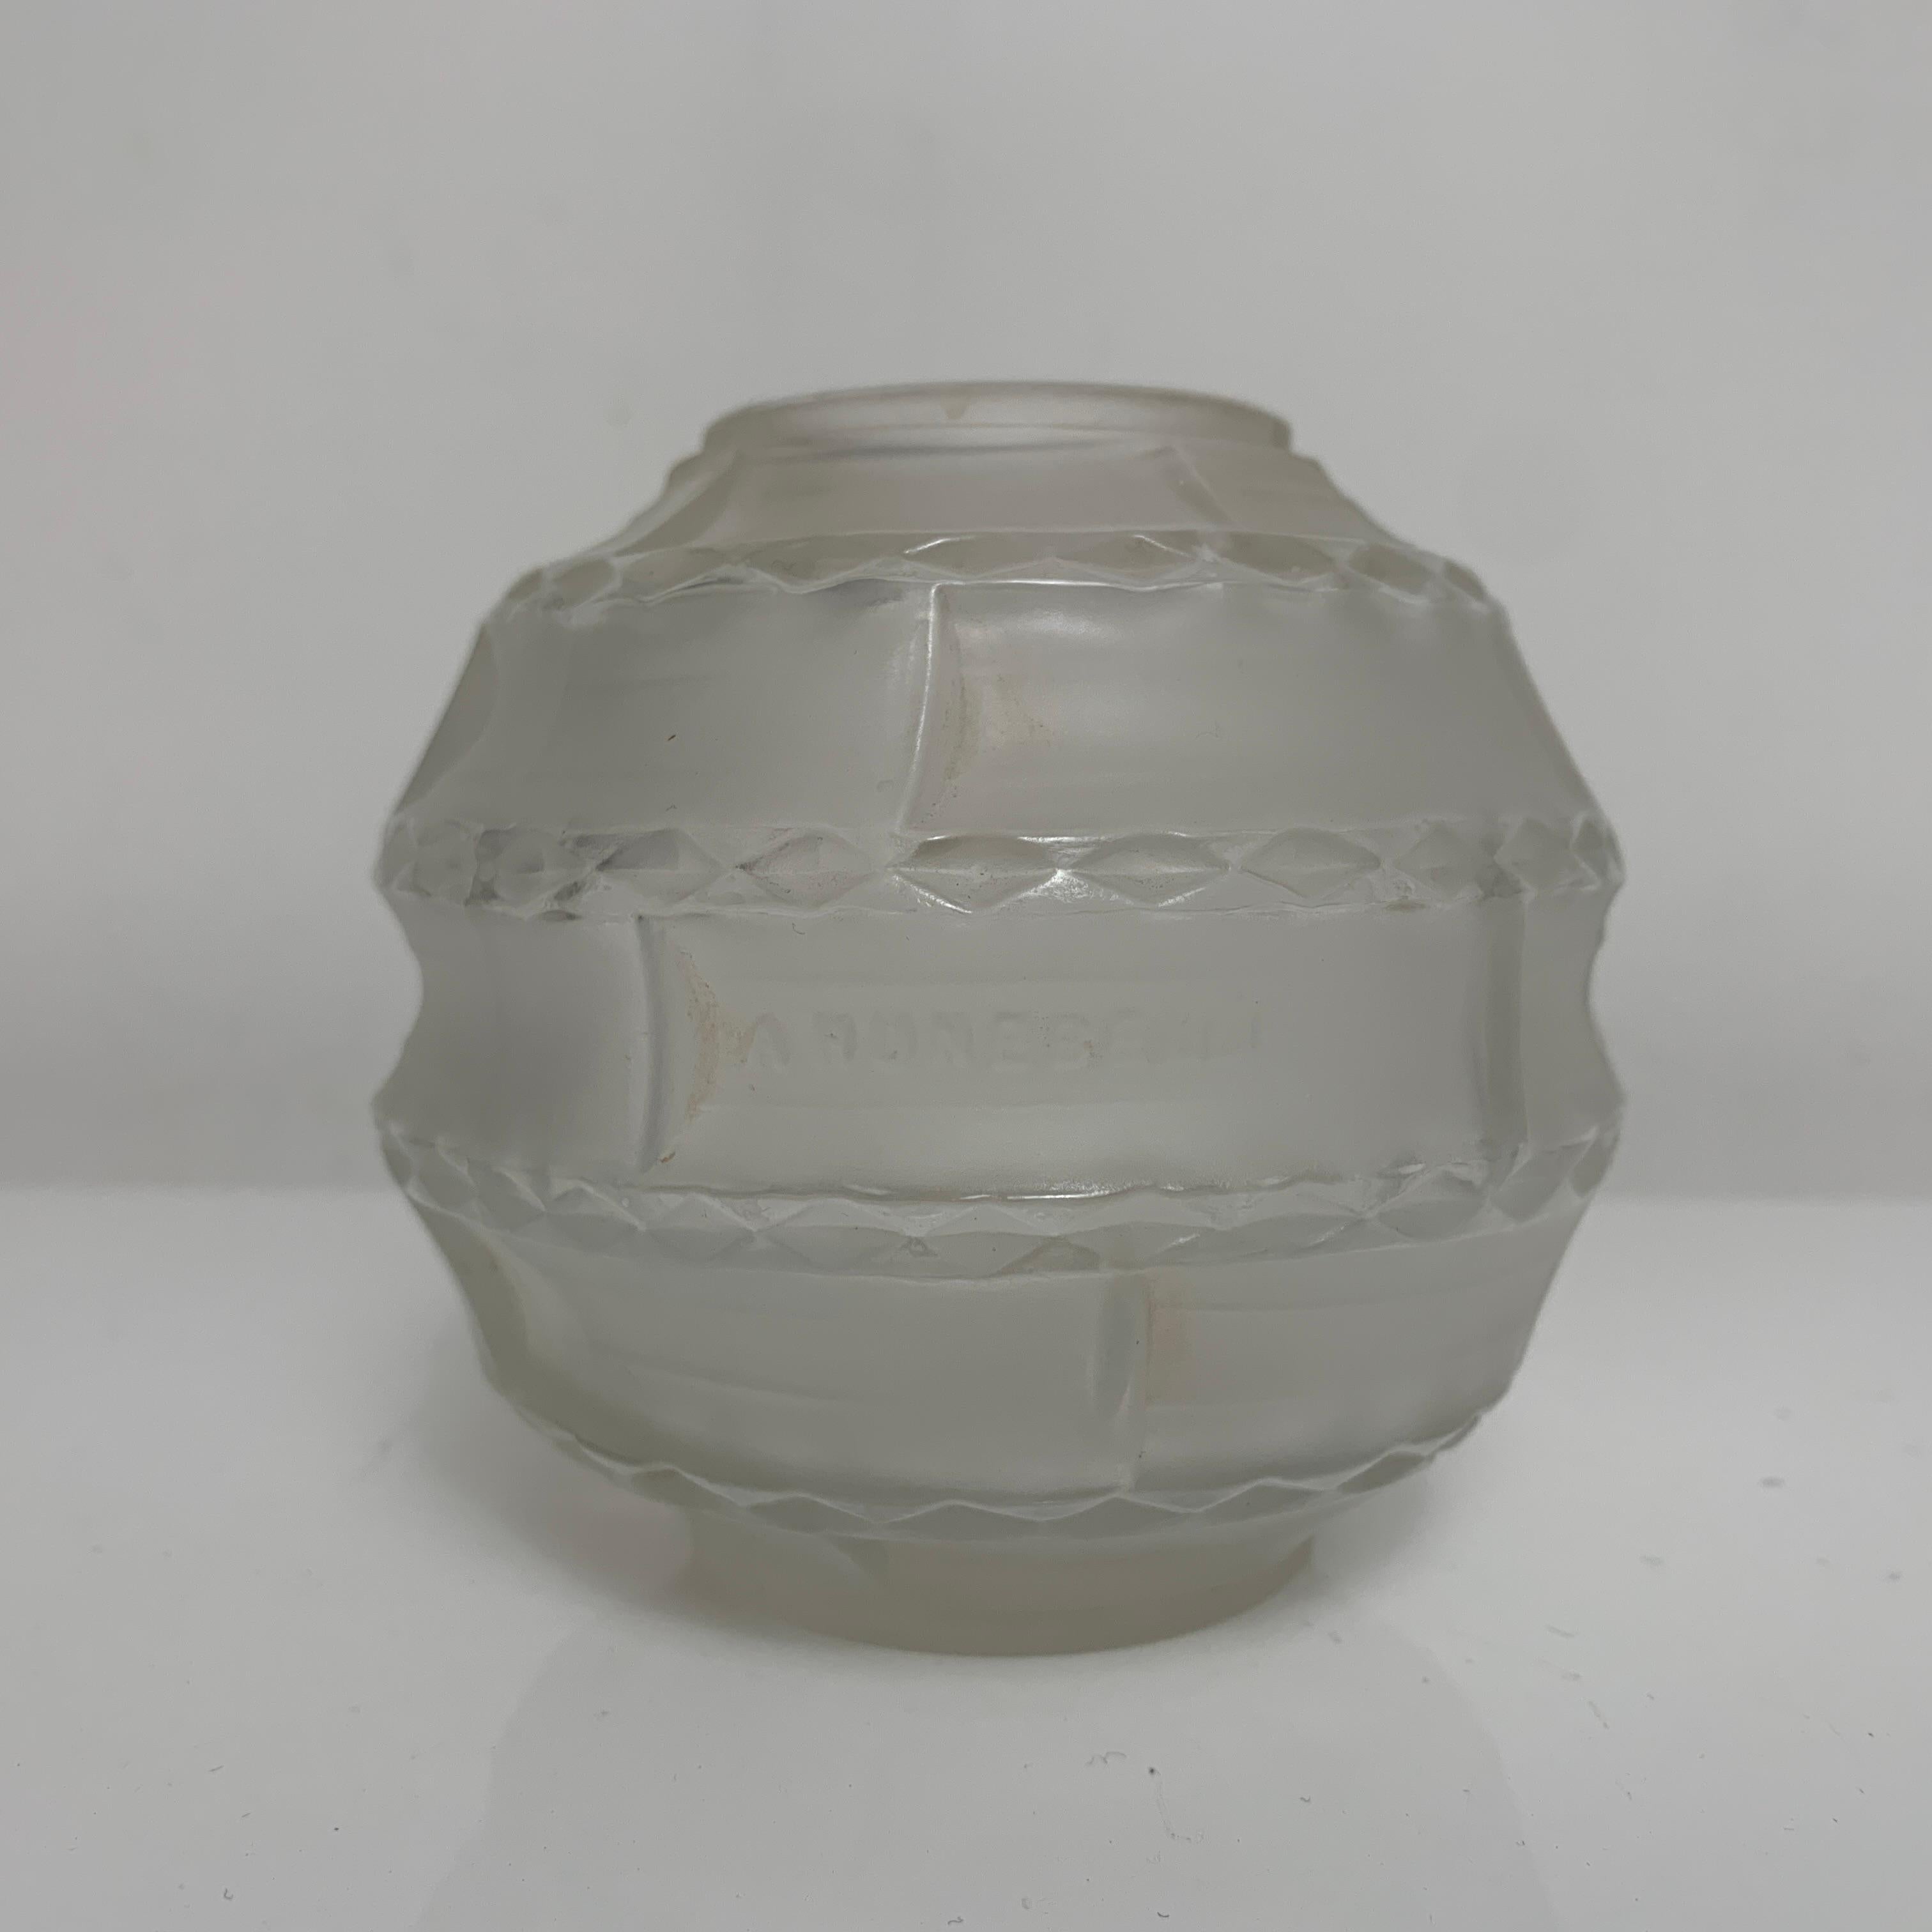 Description :
Petit vase boule de Andre Hunebelle modele « Losanges »

Dimensions : 
Diamètre 10 cms
Hauteur 9 cms

Etat : 
Bel Etat d’usage. Petite irregularité au col qui semble d’origine. Bien regarder les photos. 